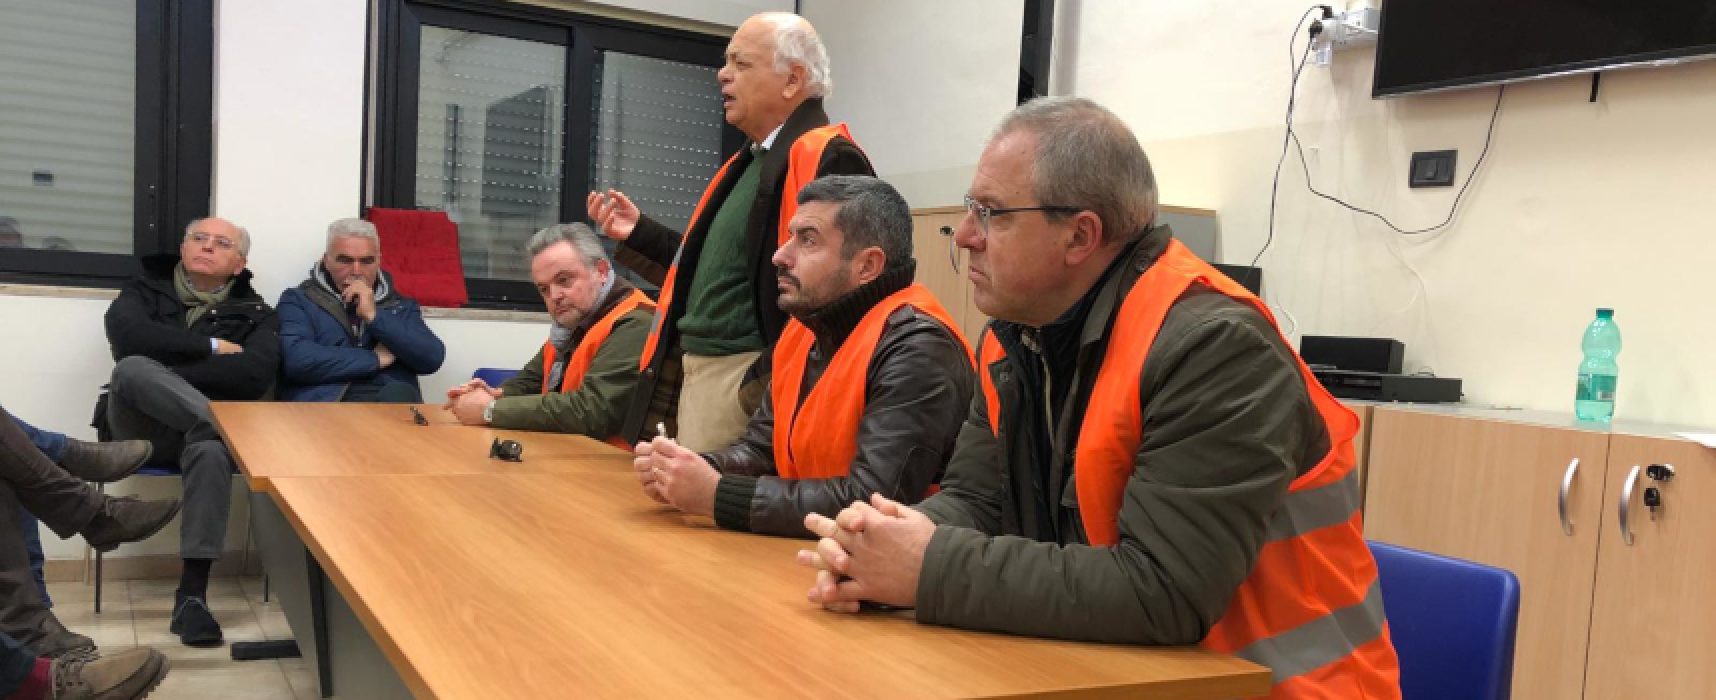 Gilet arancioni: “Sbagliato spaccare unità, Governo dia risposte agli agricoltori pugliesi”